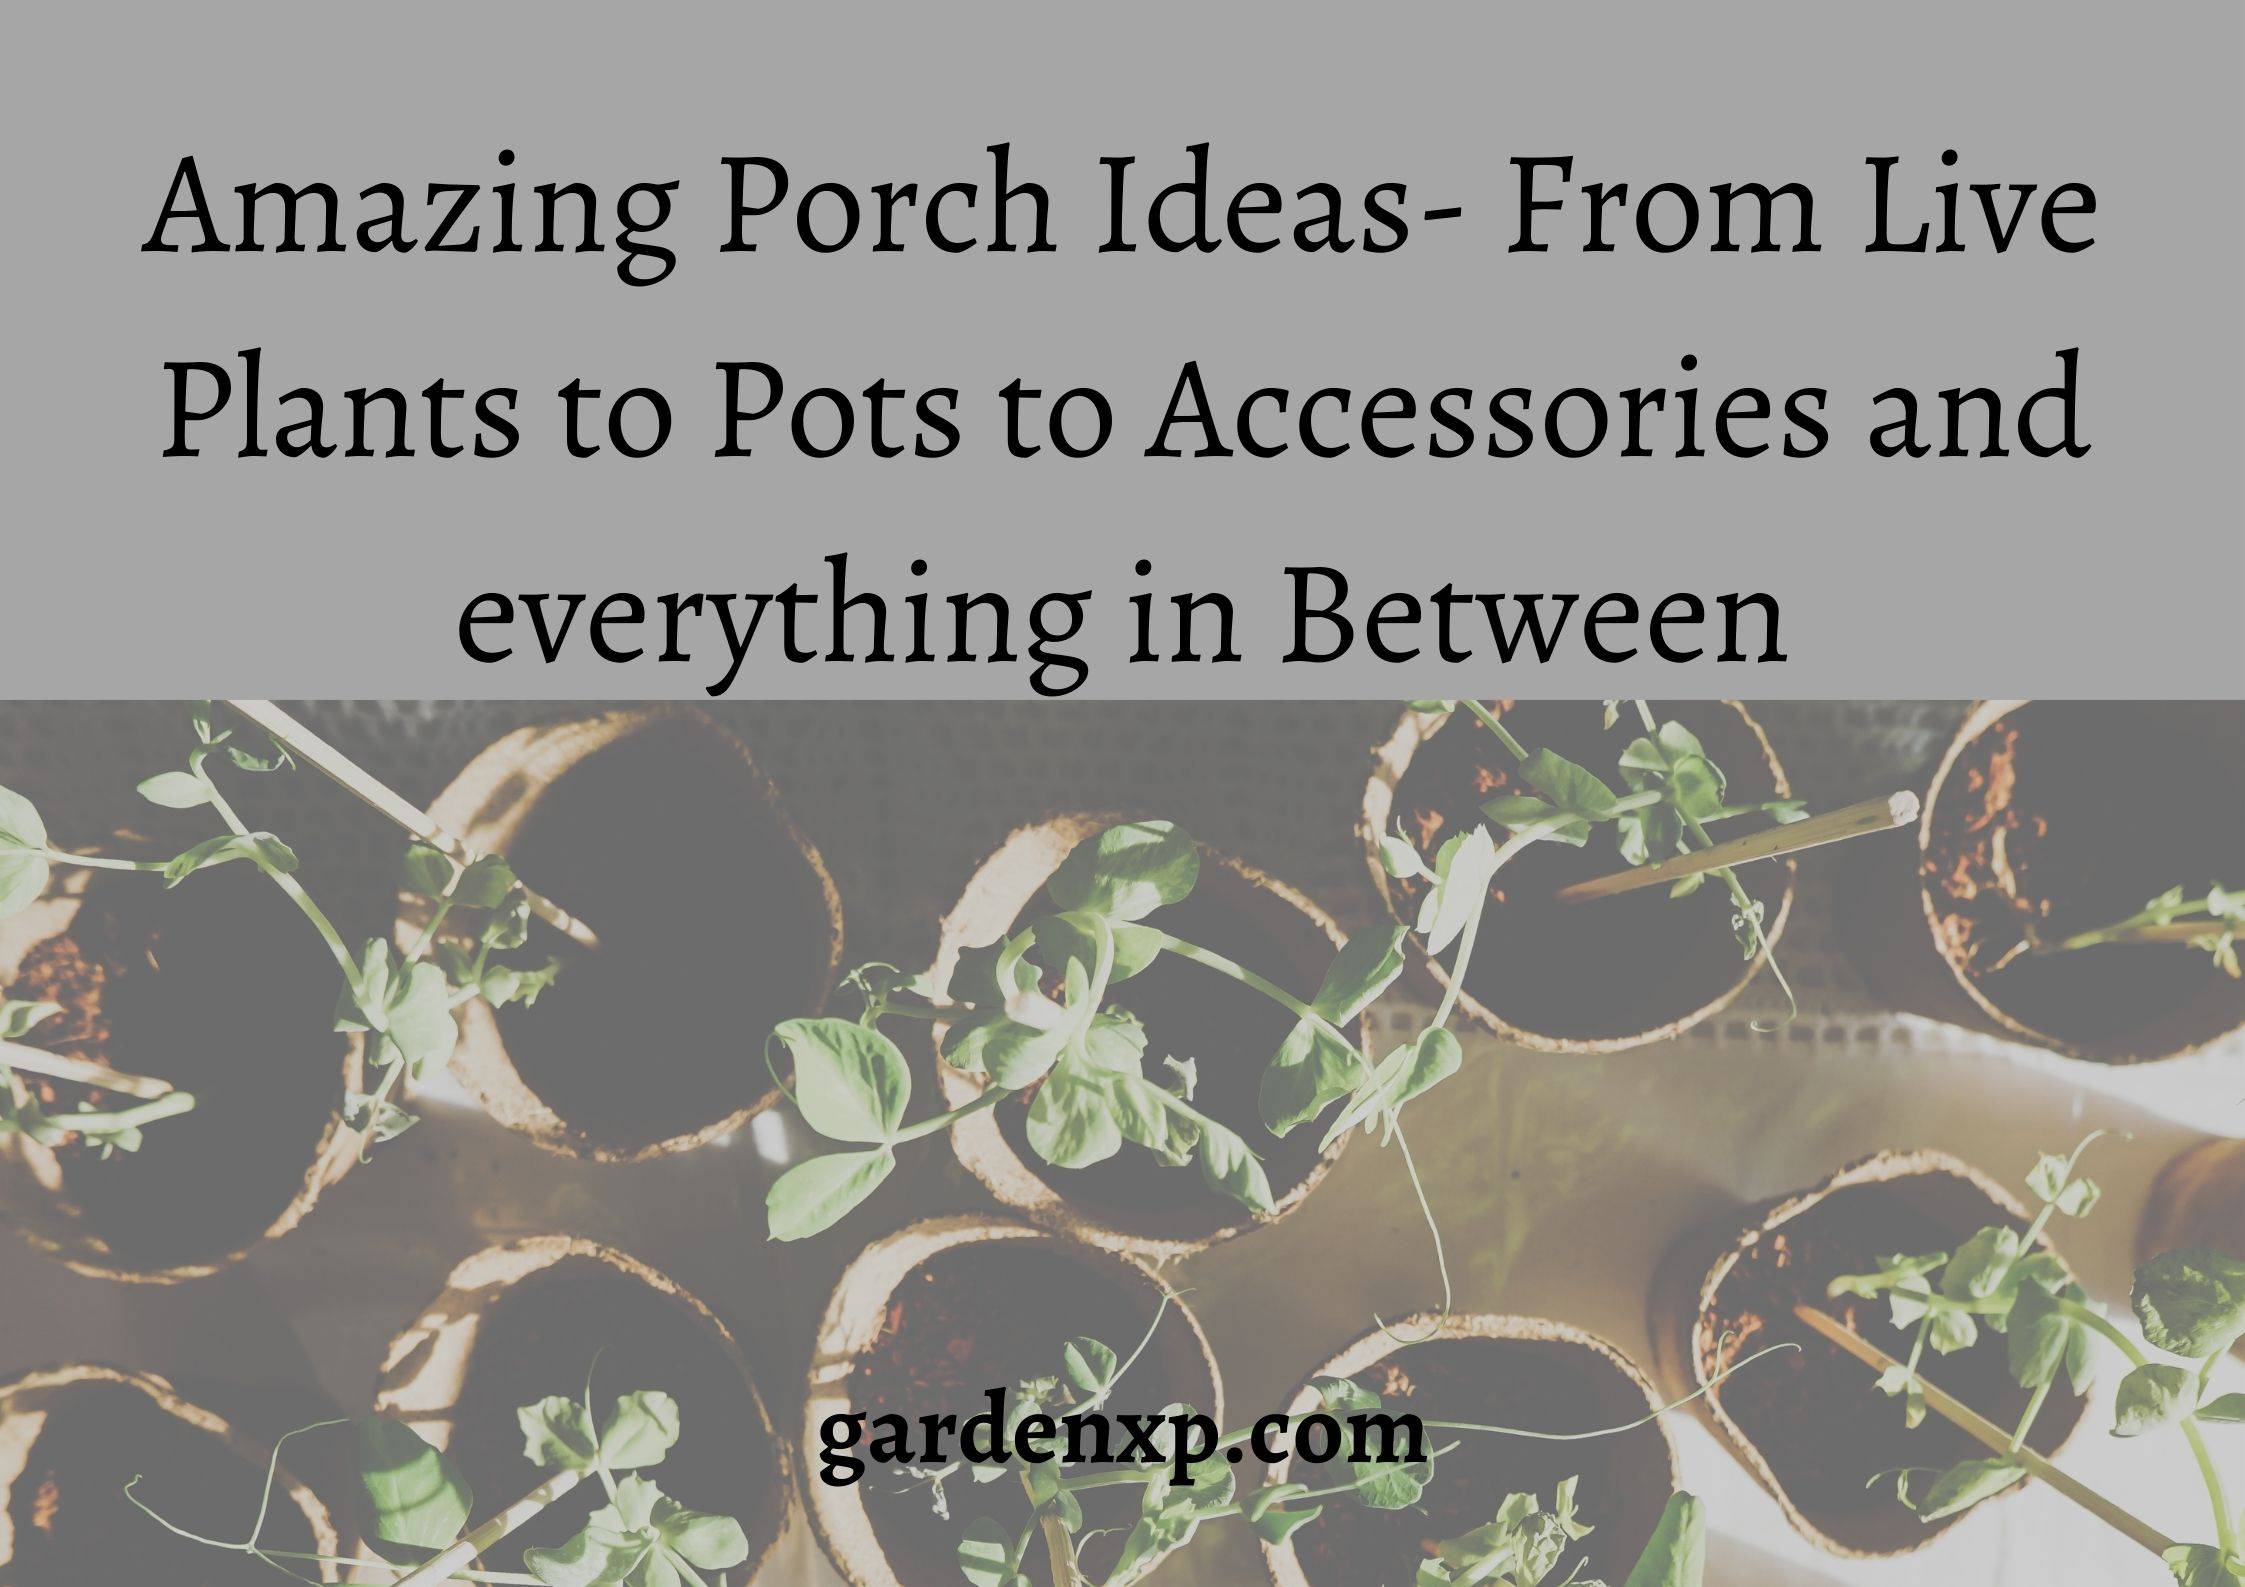 Porch Plant Ideas Live Plants Pots and Accessories for Porch Porch ideas